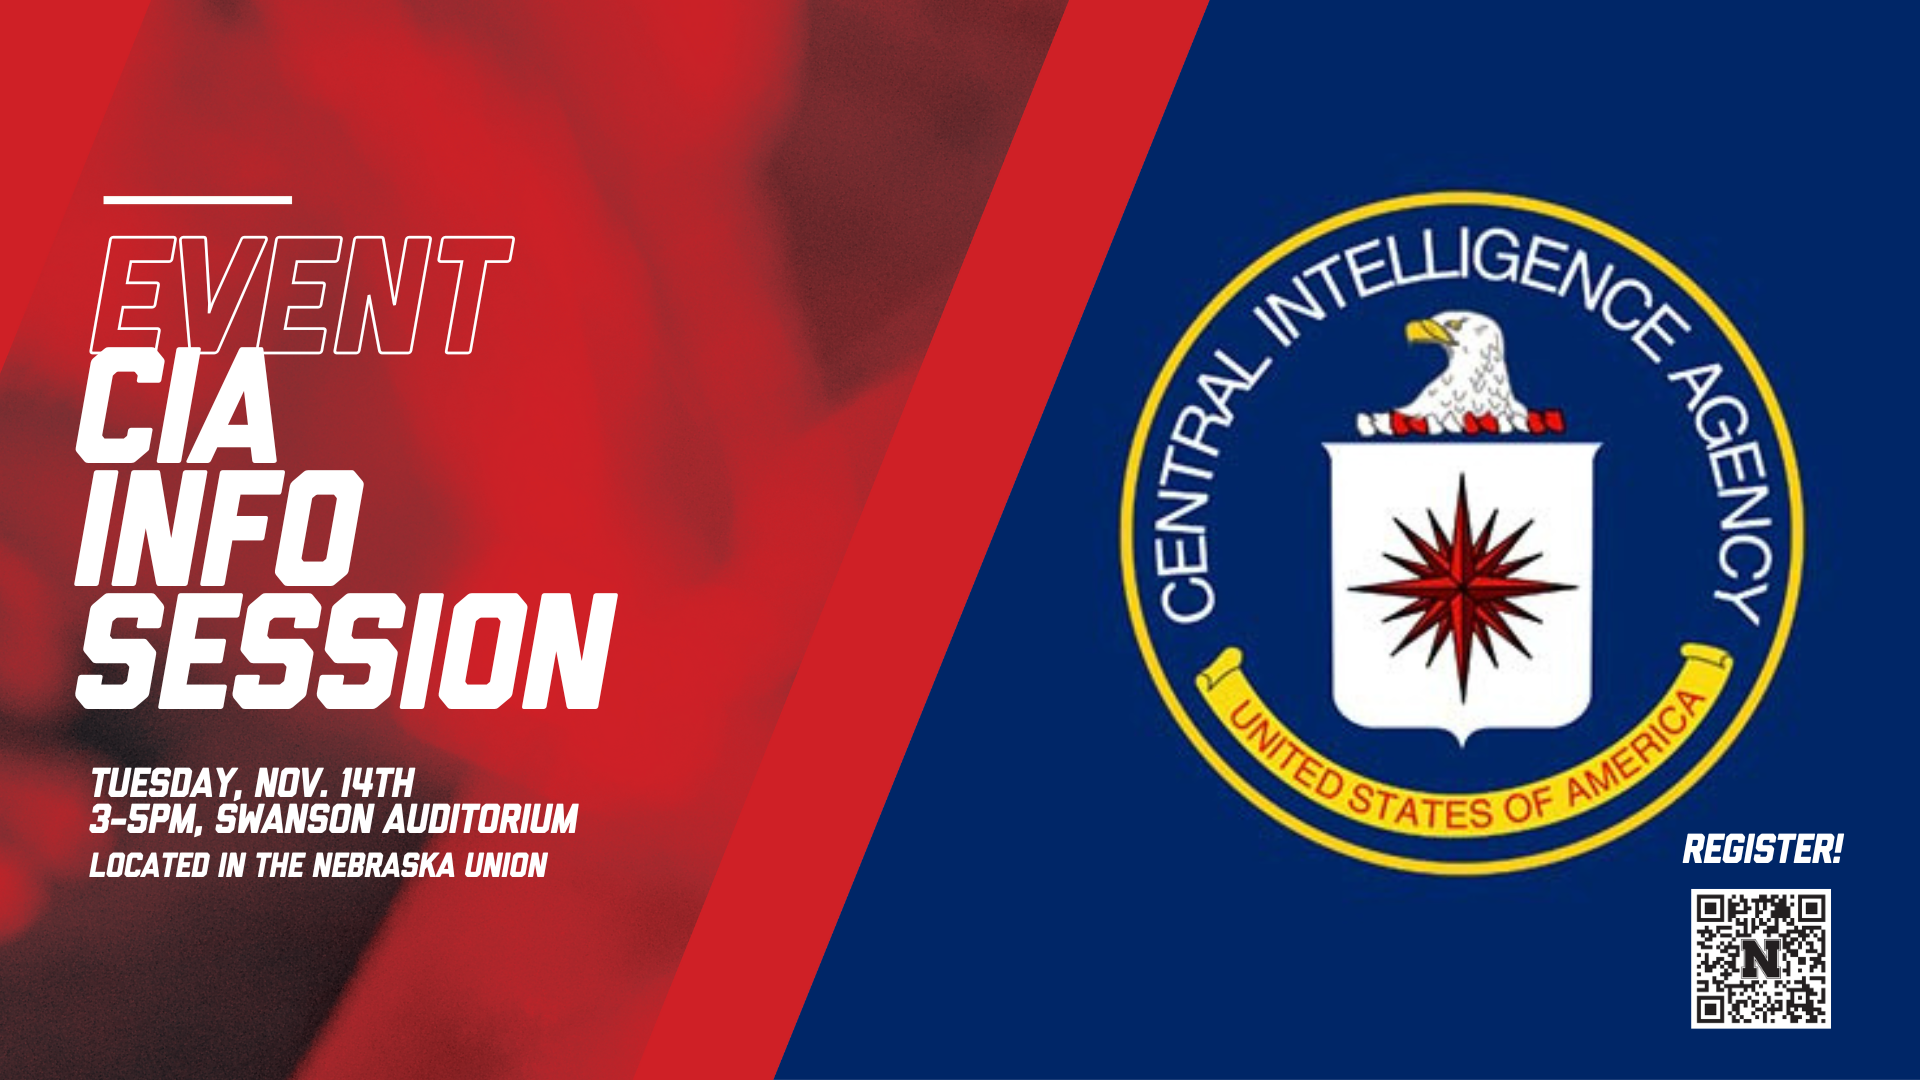 CIA Info Session